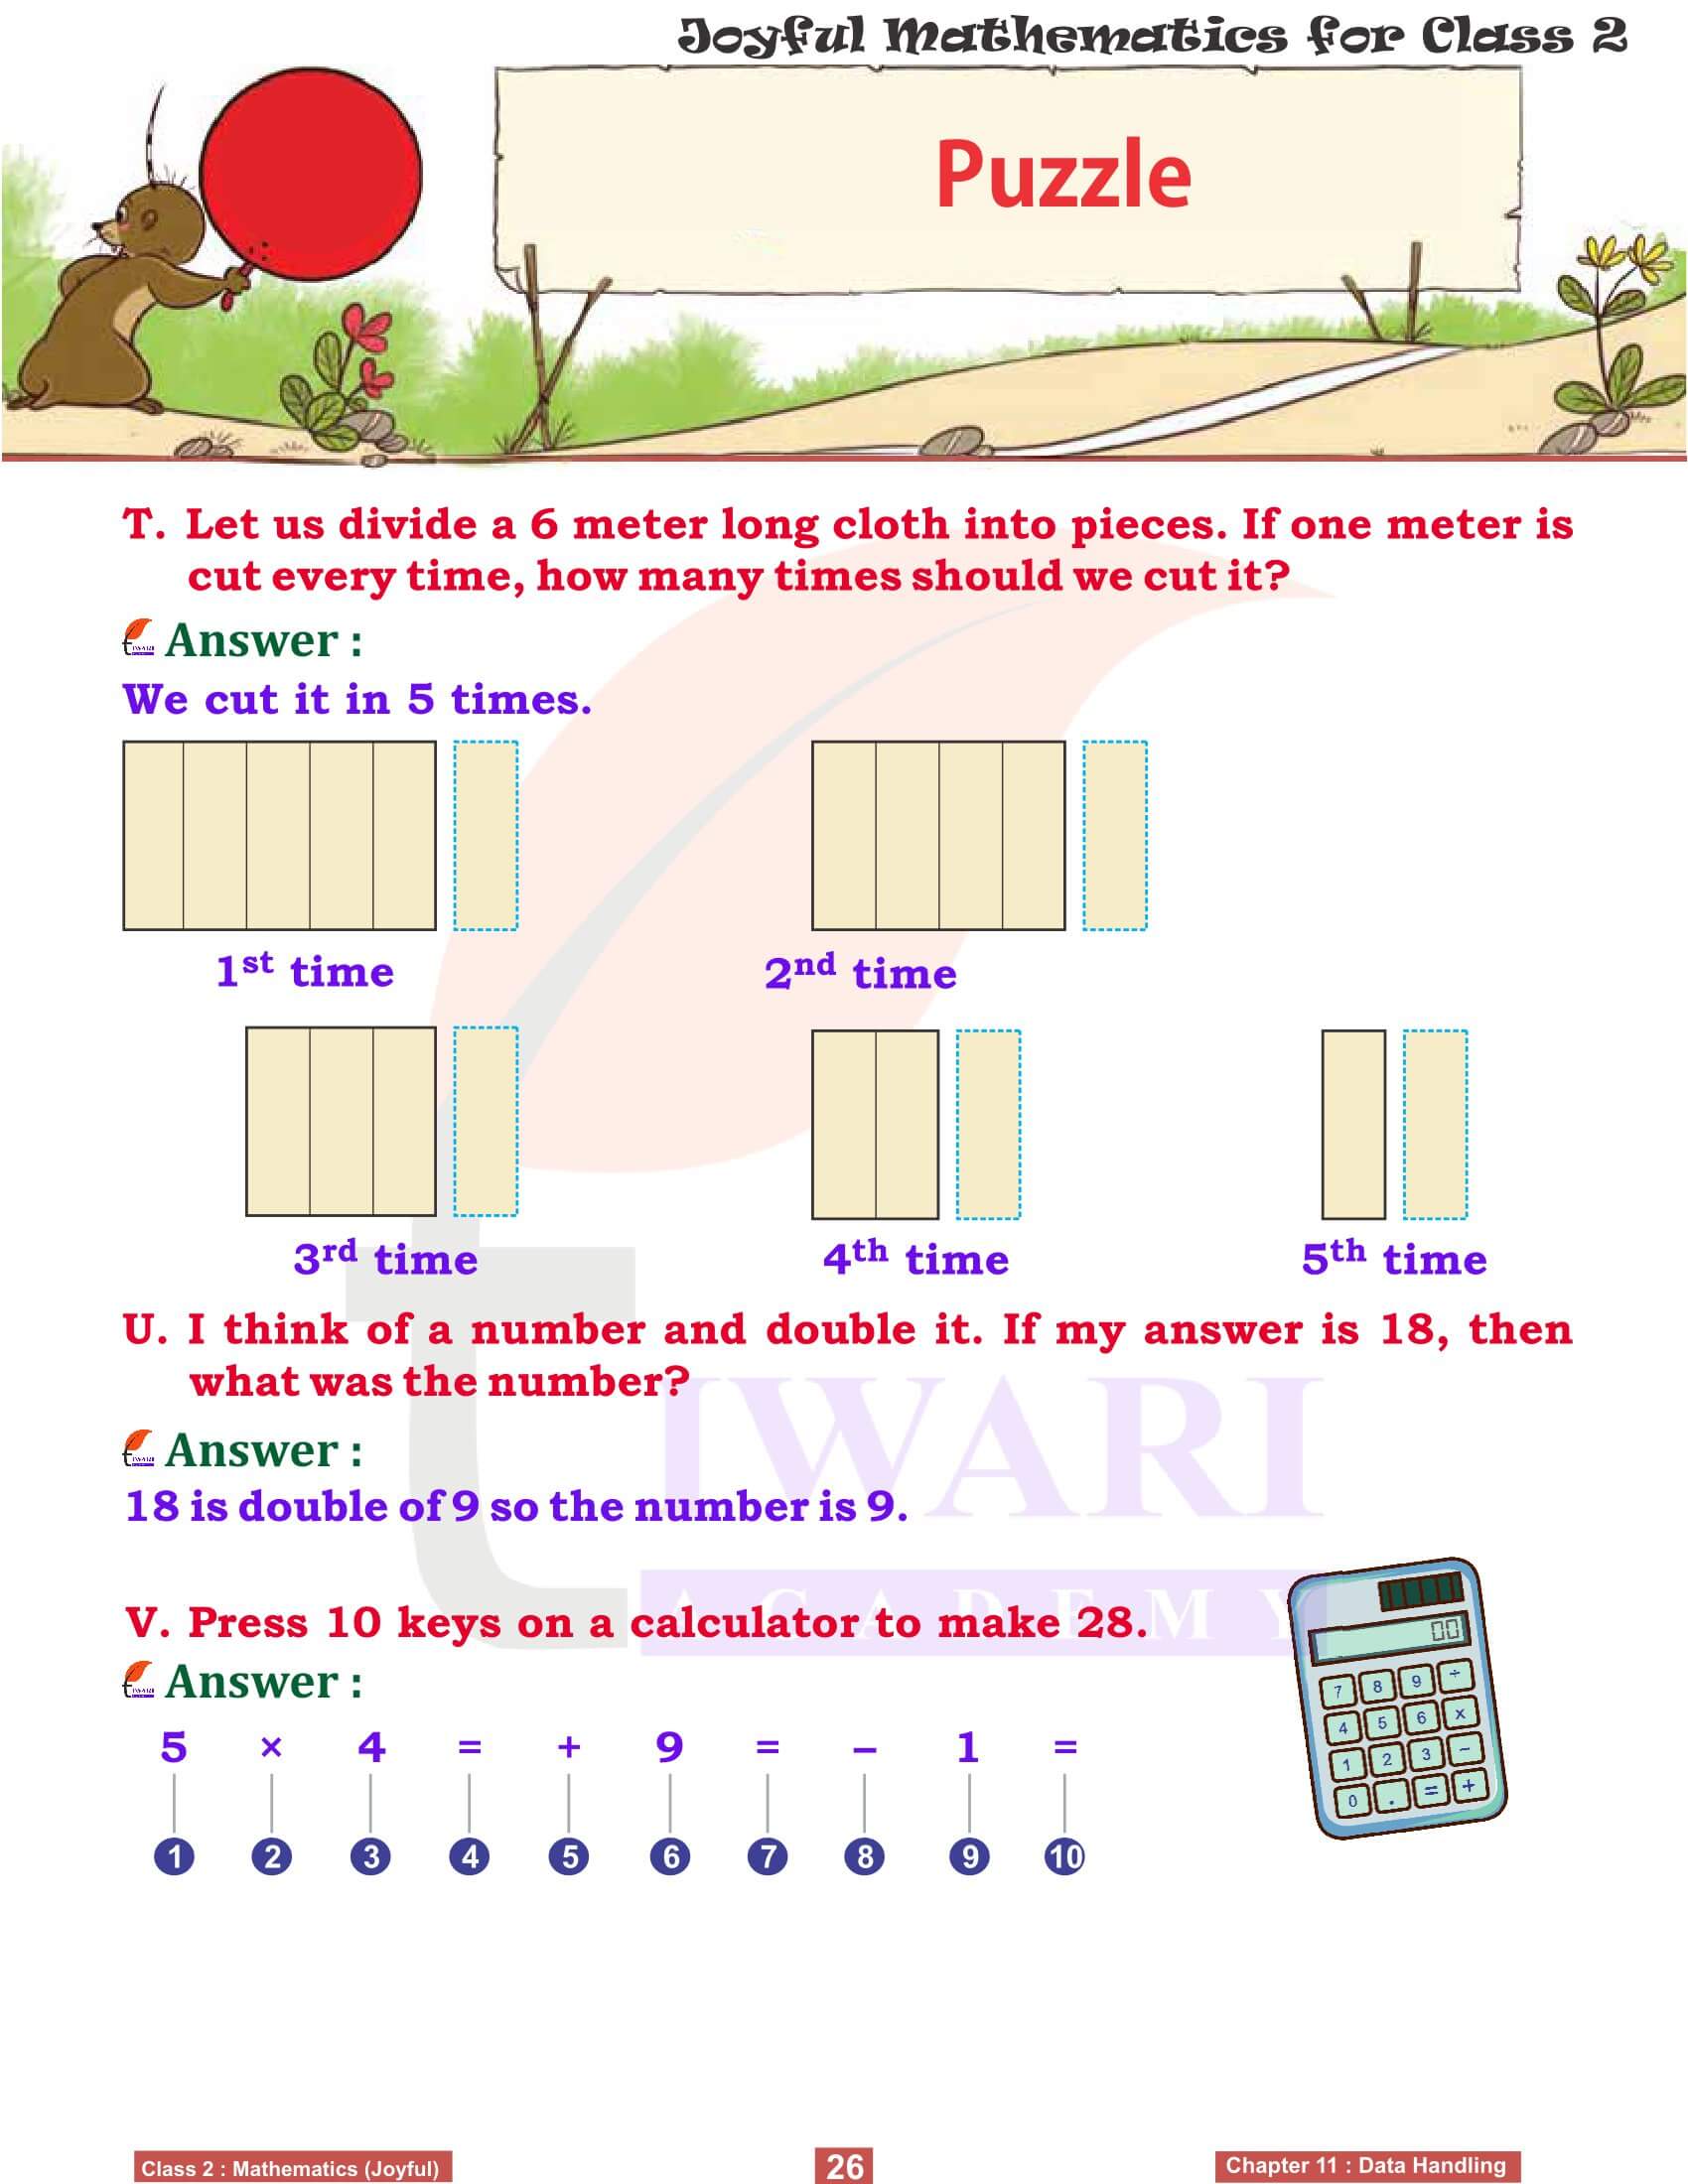 Class 2 Maths Chapter 11 Workbooks